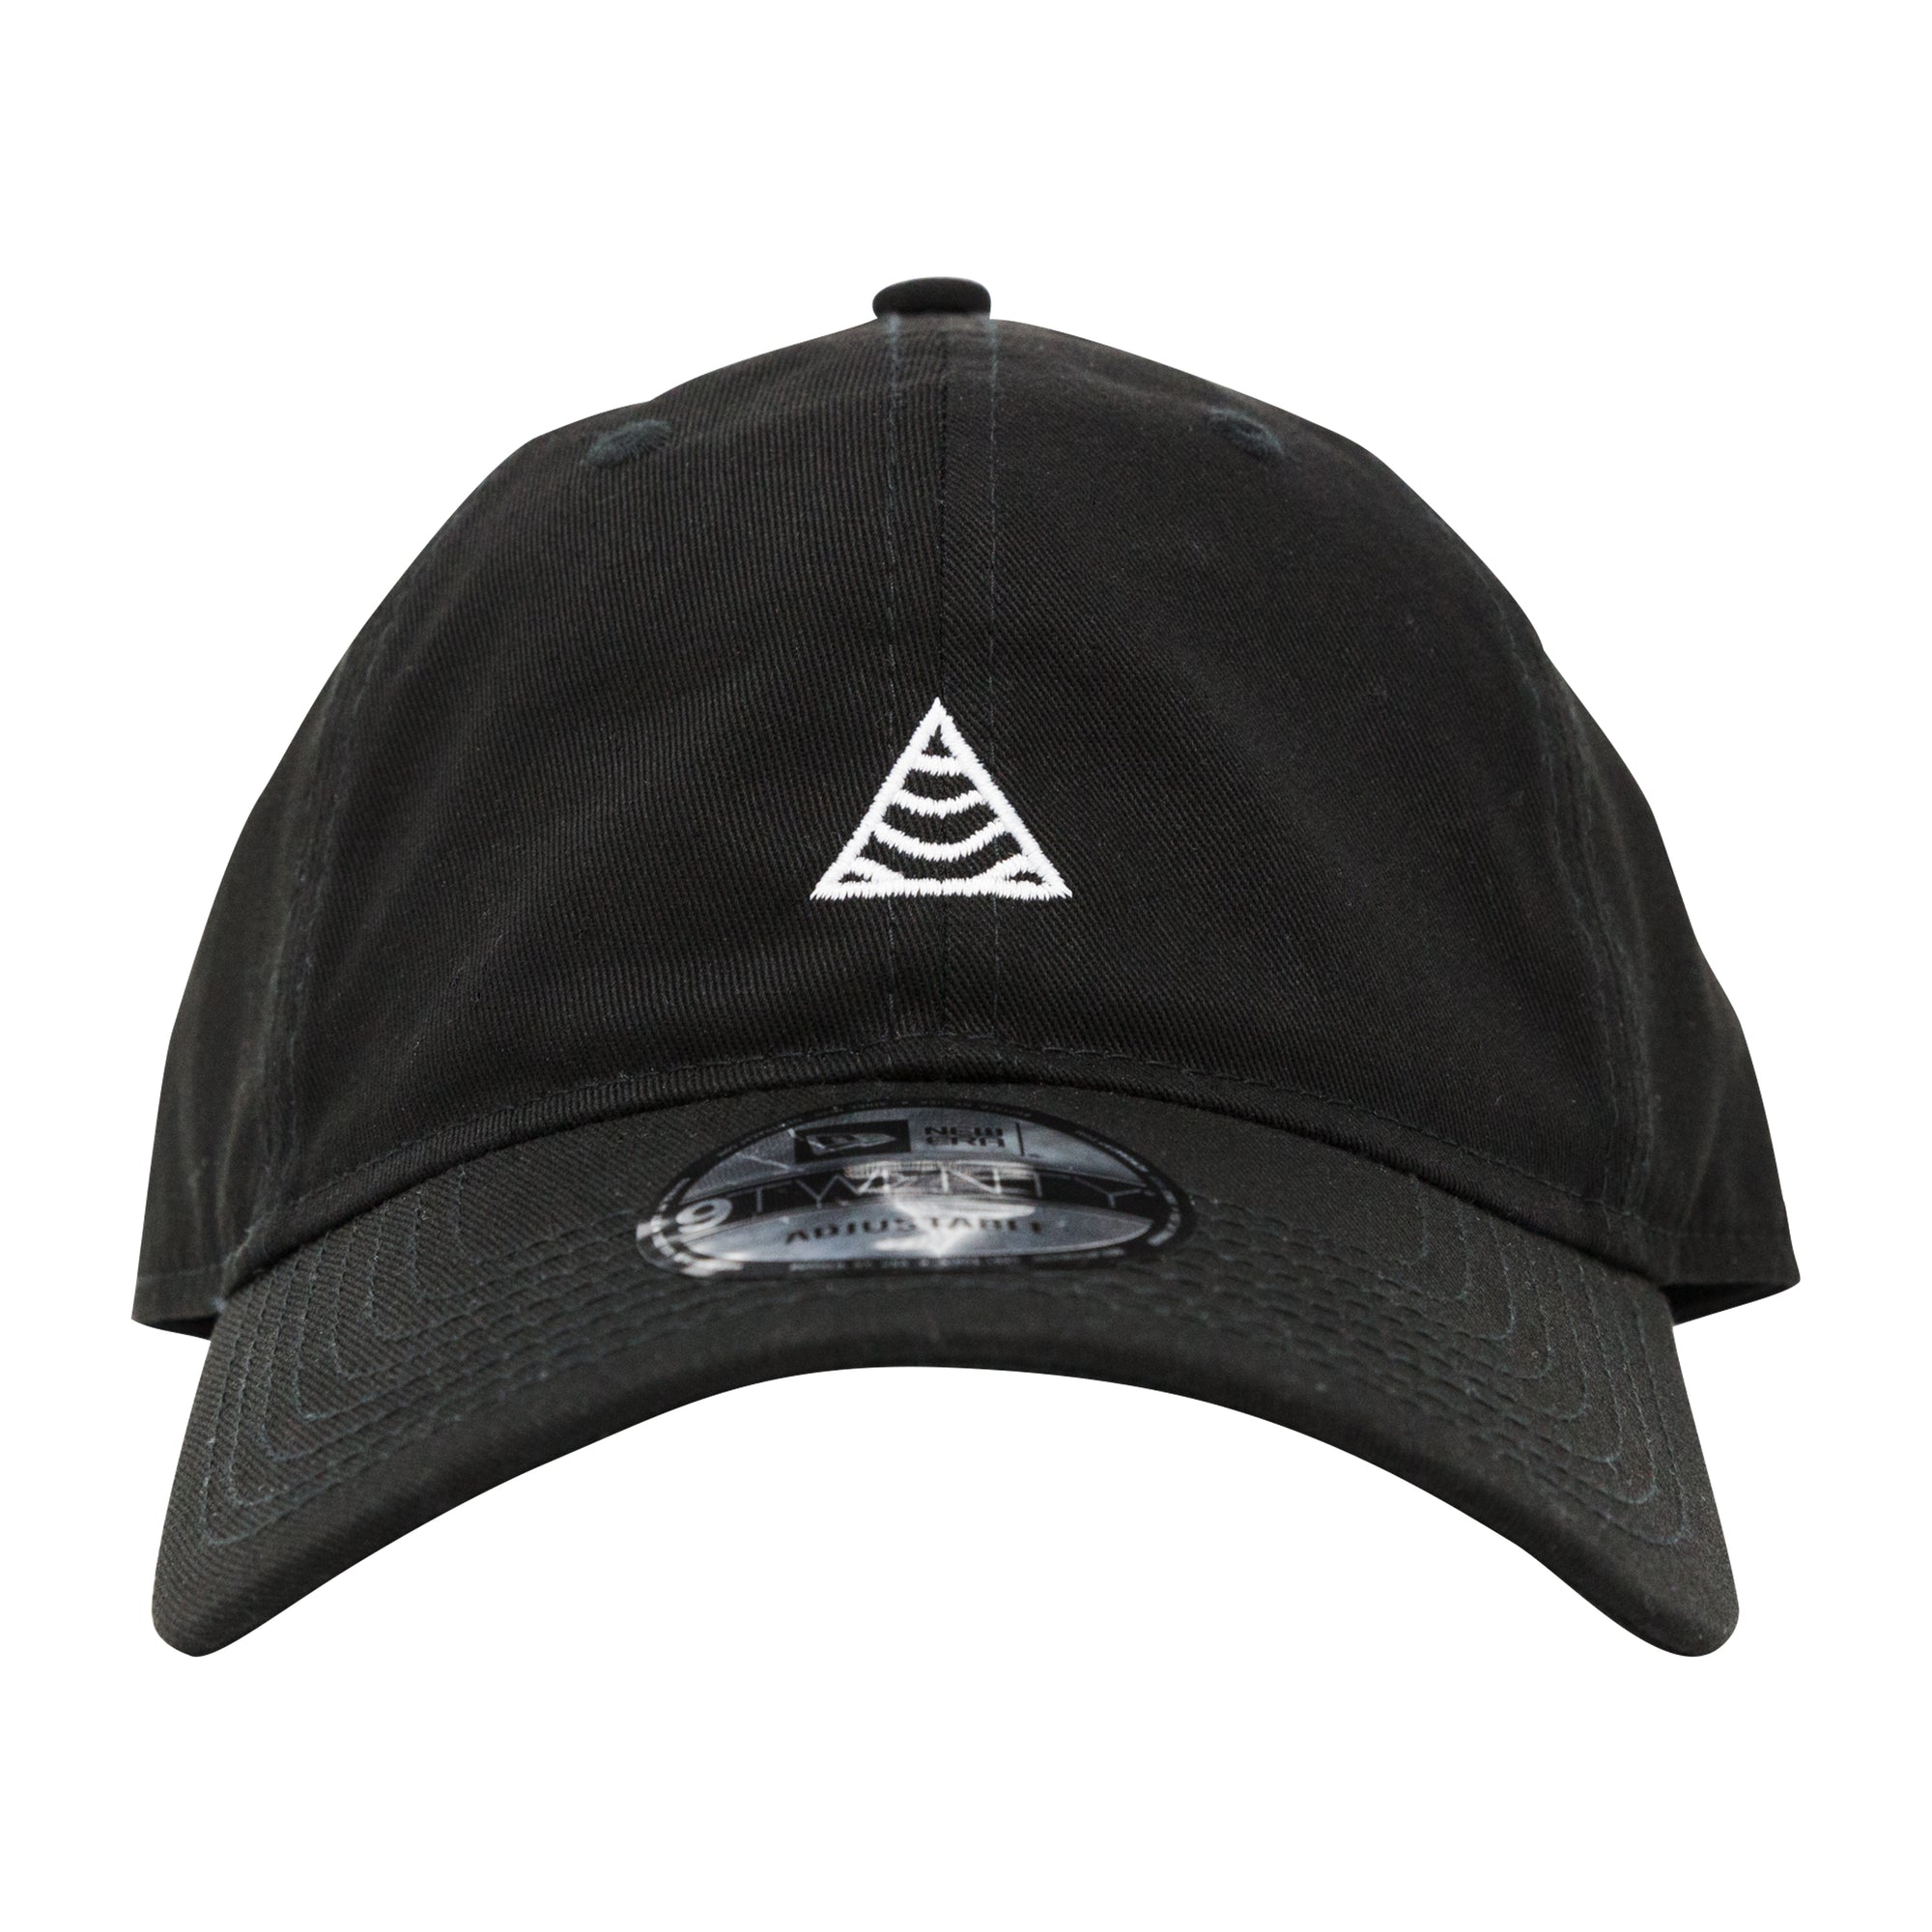 TRADES New Era 9TWENTY Strapback Hat Black